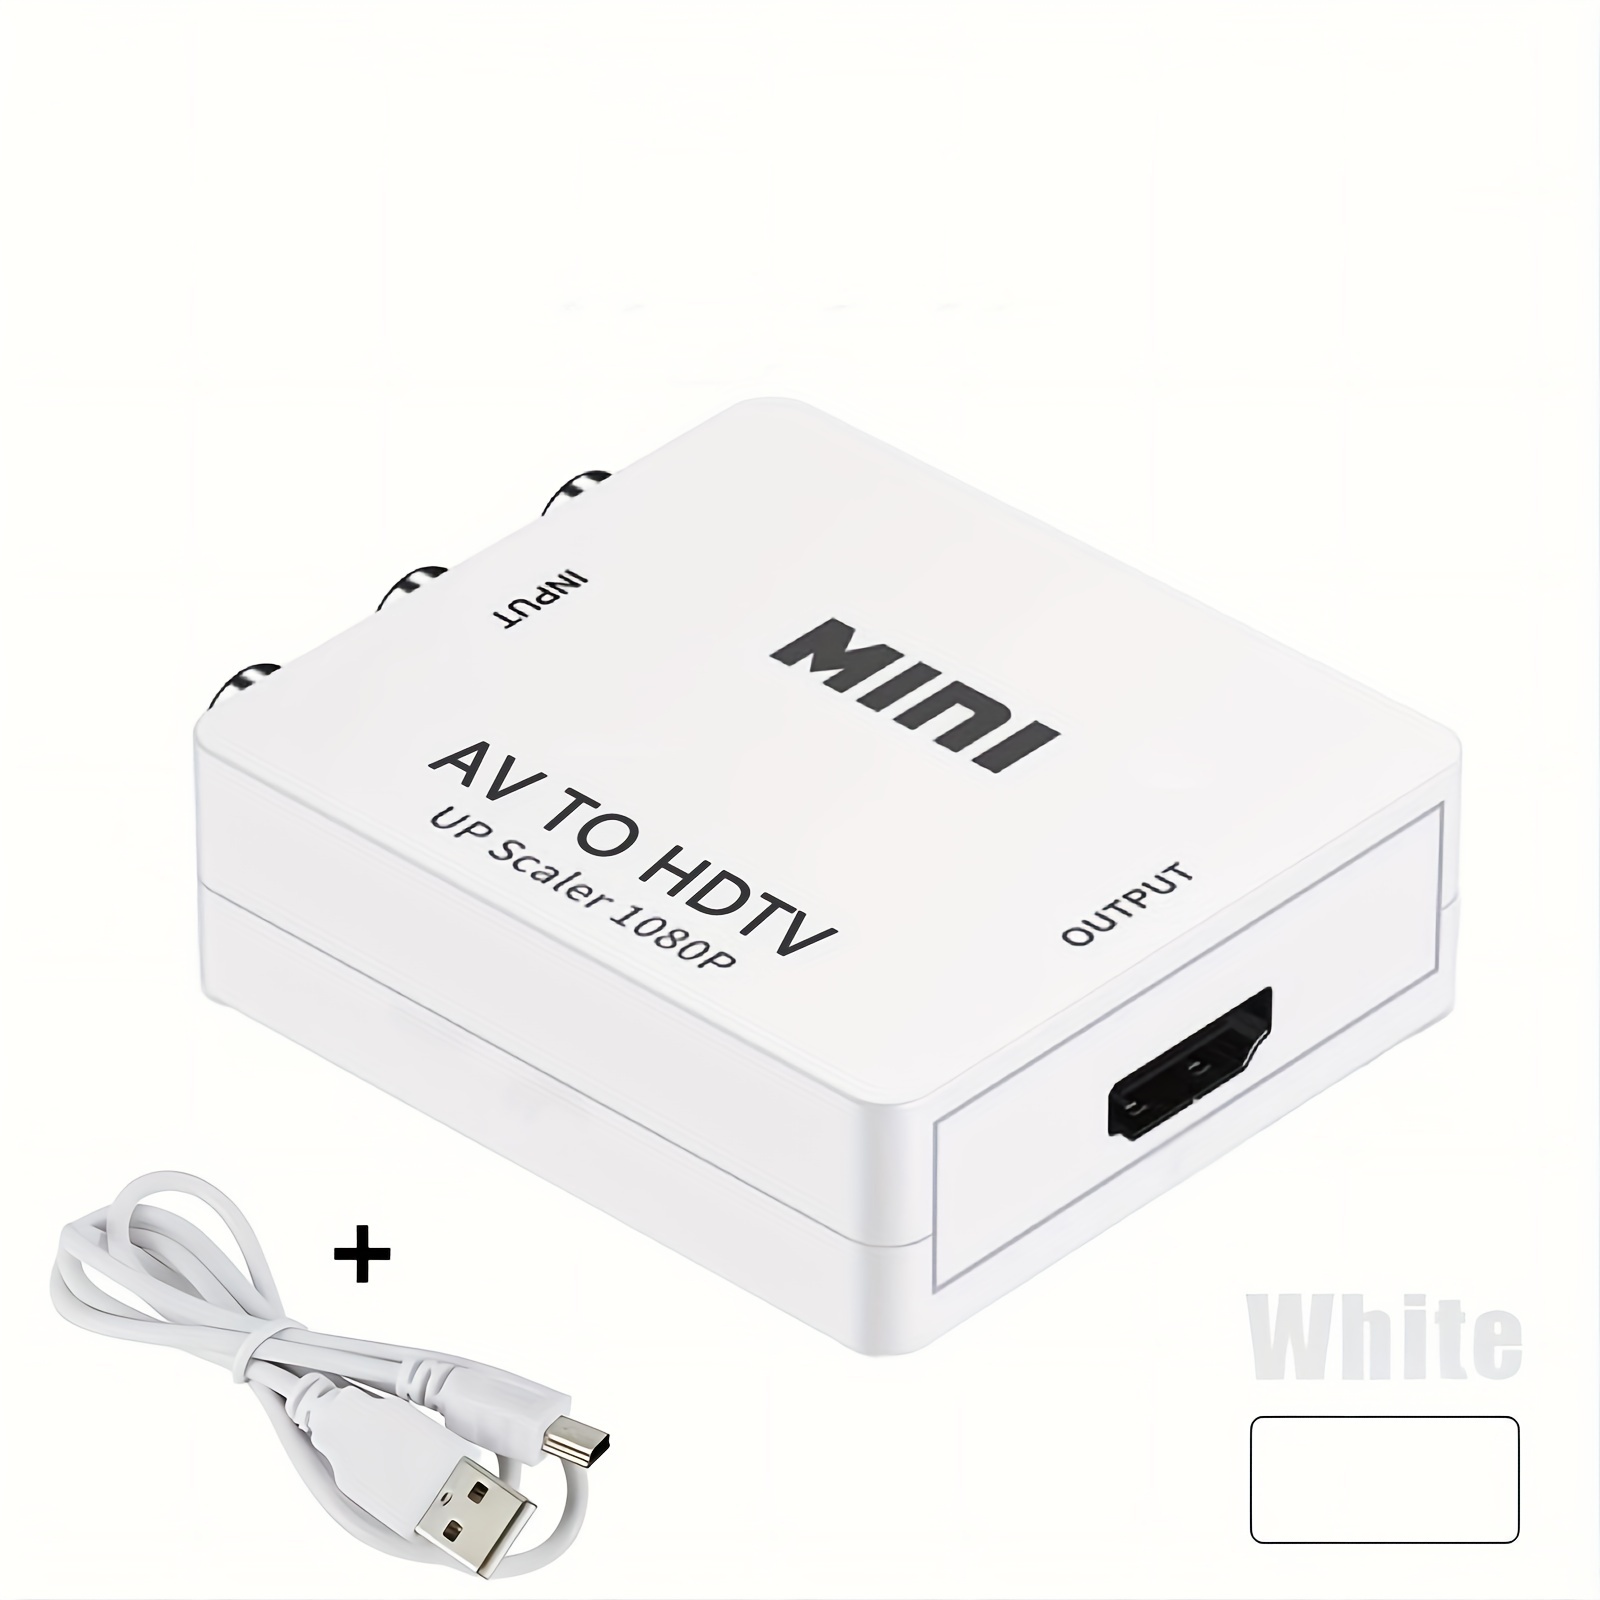 Convertidor WII a HDMI Full HD 1080P WII a HDMI Wii 2 Convertidor HDMI  Audio de 3,5 mm para PC Pantalla de monitor HDTV Adaptador de Wii a HDMI